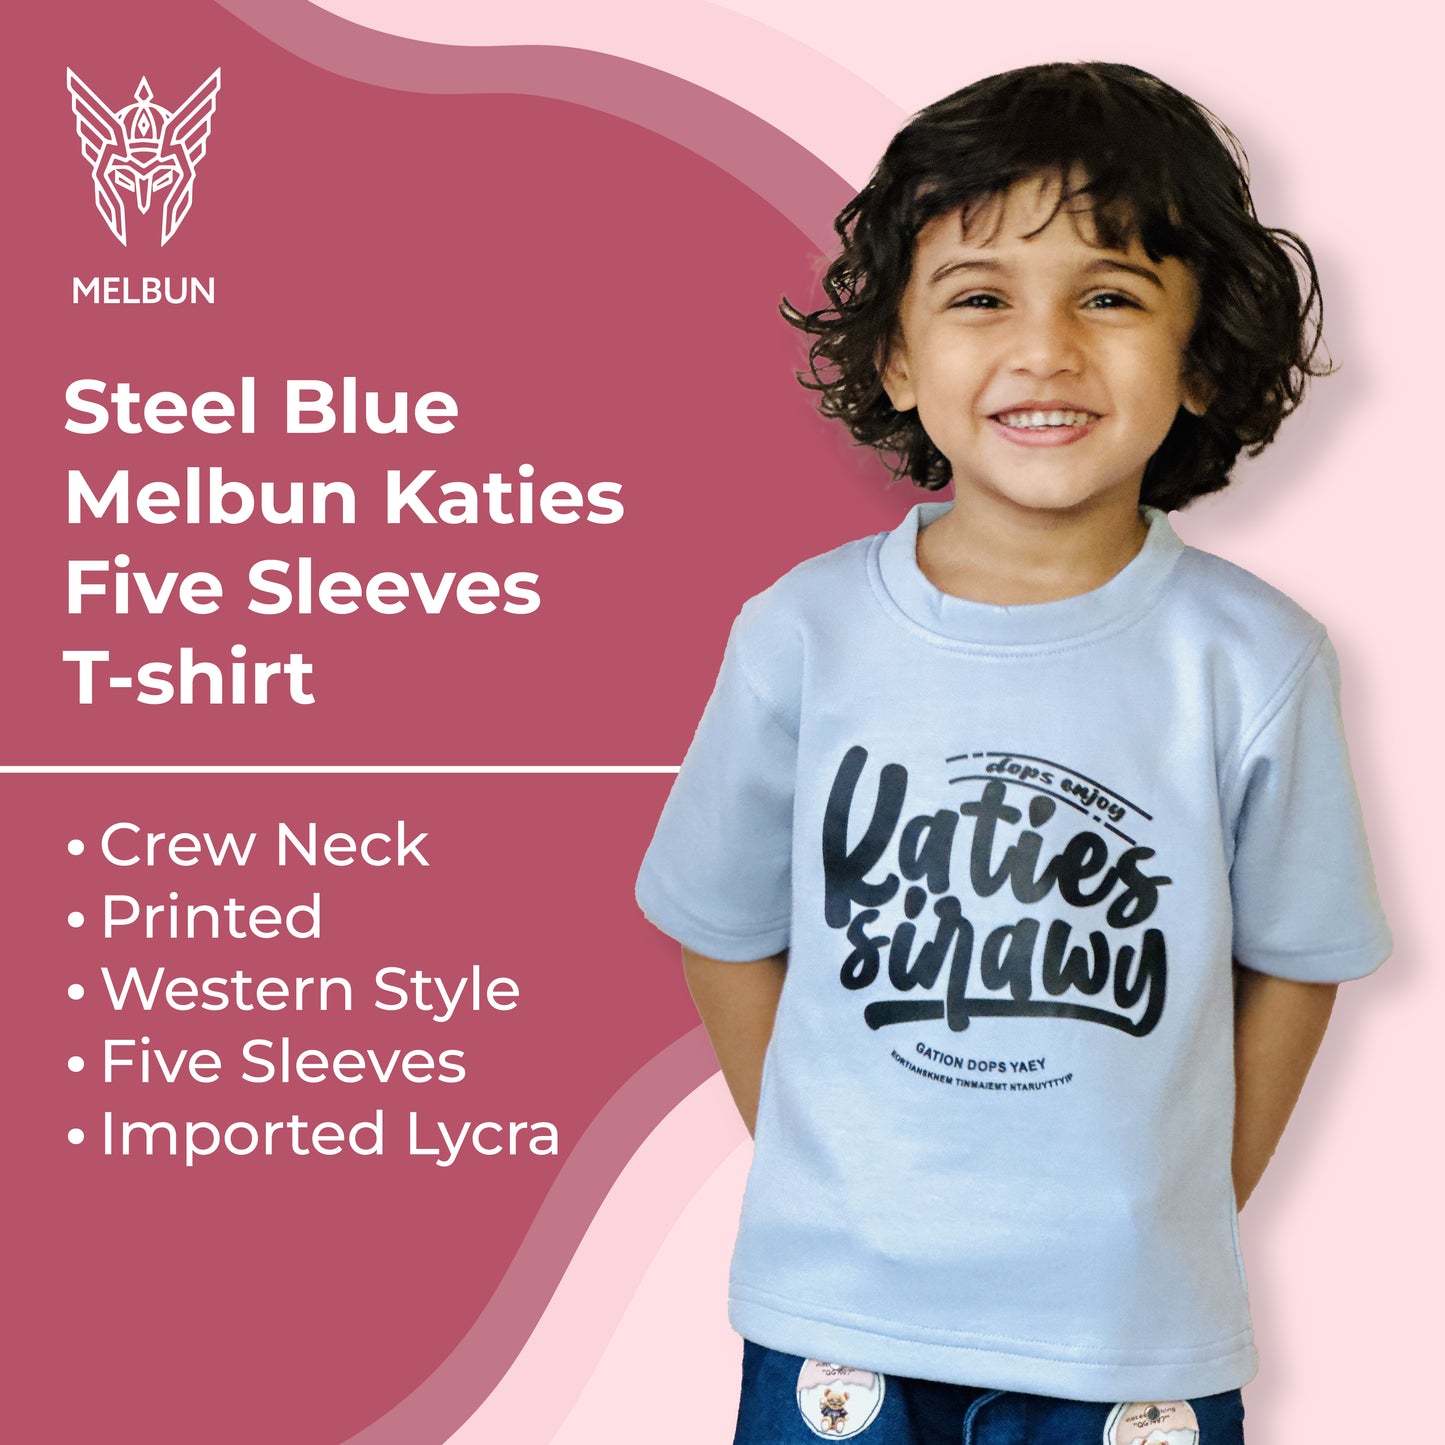 Steel Blue Melbun Katies Five Sleeves T-shirt